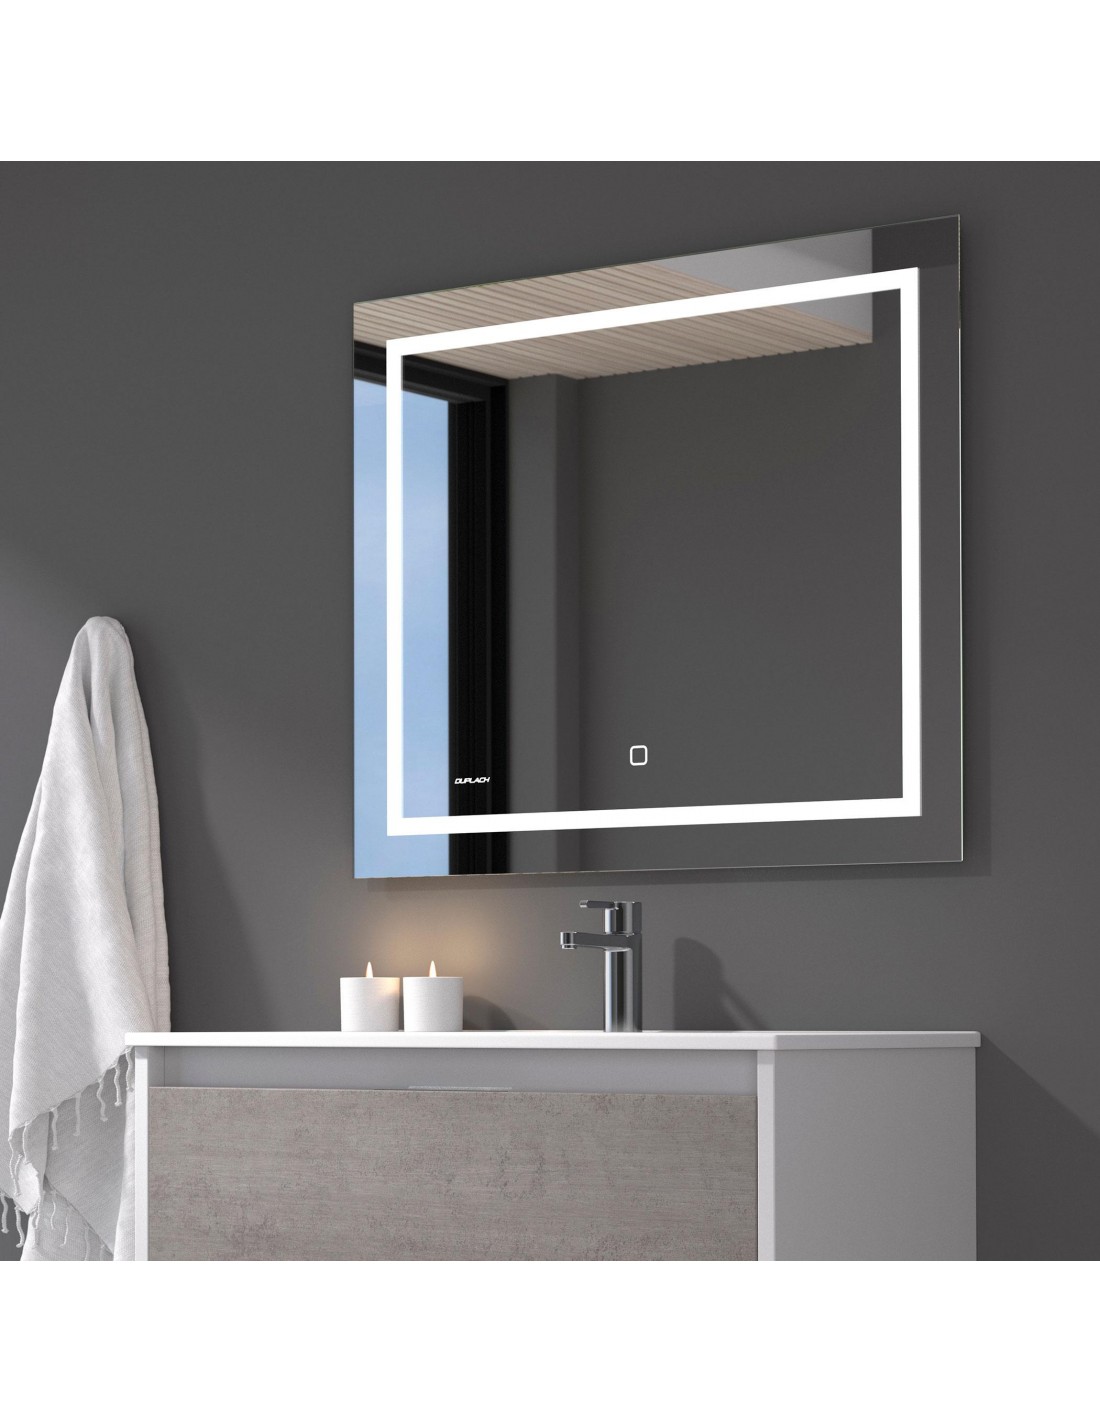 Espejo de baño rectangular con antivaho y LED perimetral interna